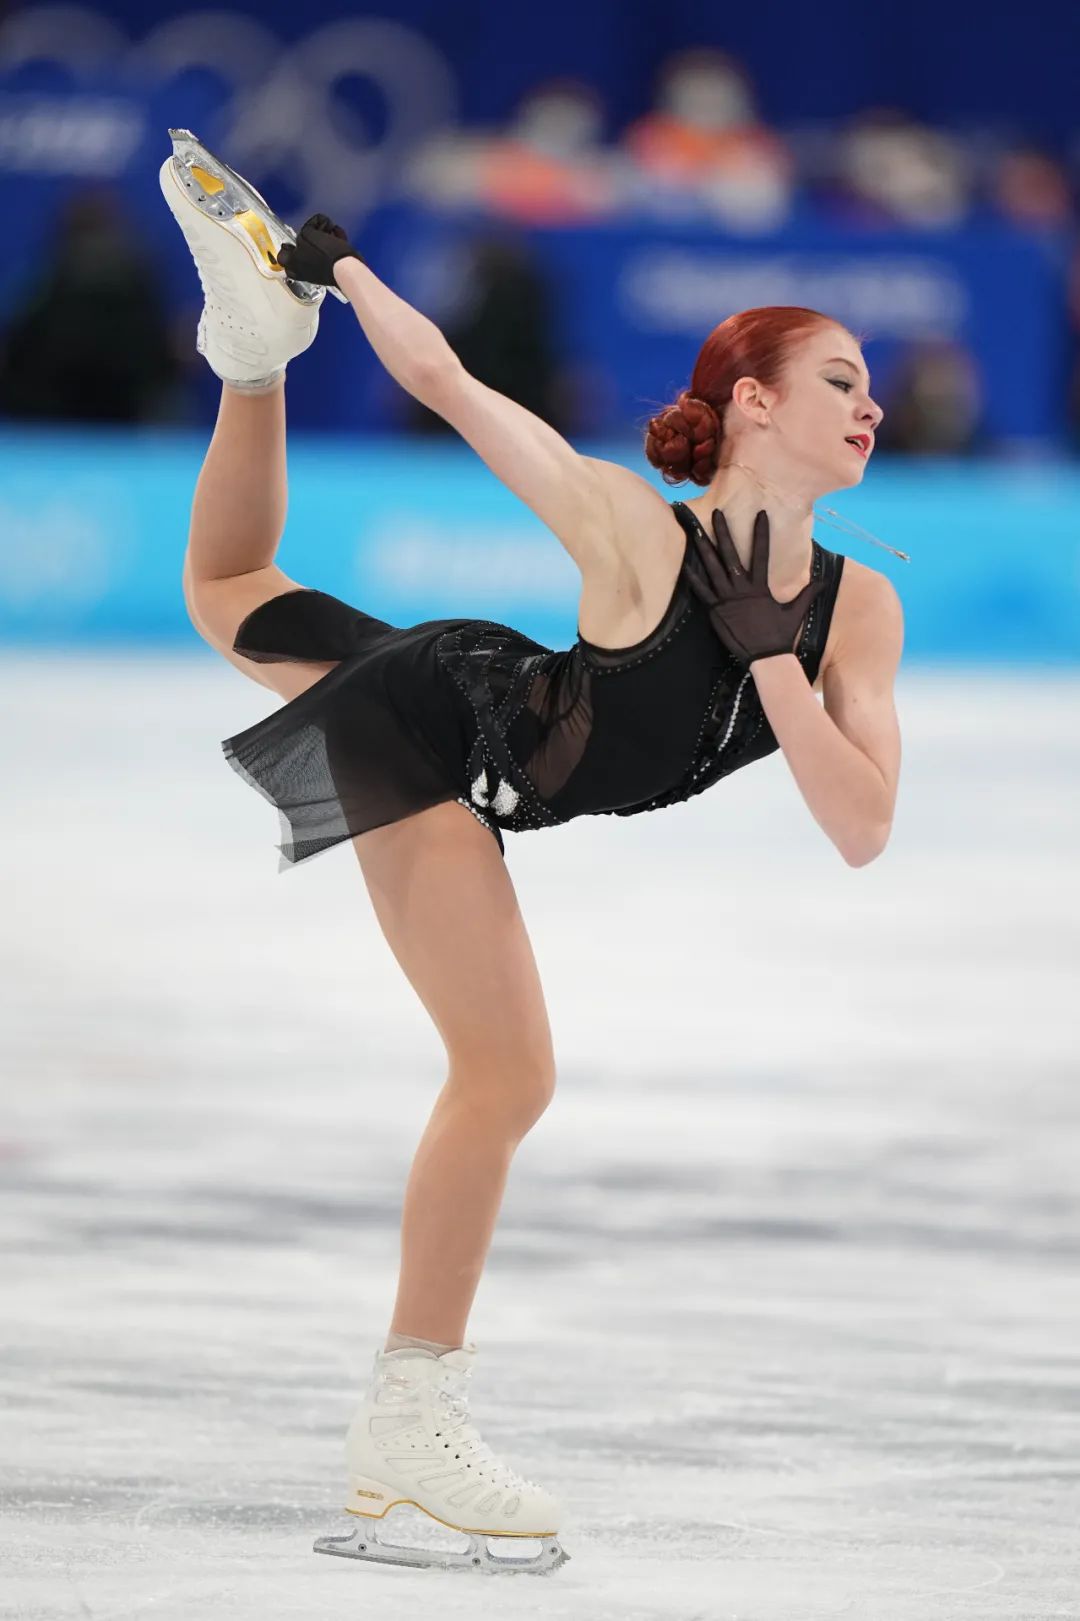 2月17日，俄罗斯奥委会选手亚历山德拉·特鲁索娃在比赛中。当日，北京2022年冬奥会花样滑冰女子单人滑自由滑比赛在首都体育馆举行，俄罗斯奥委会选手亚历山德拉·特鲁索娃获得女子单人滑亚军。   中新社记者 崔楠 摄